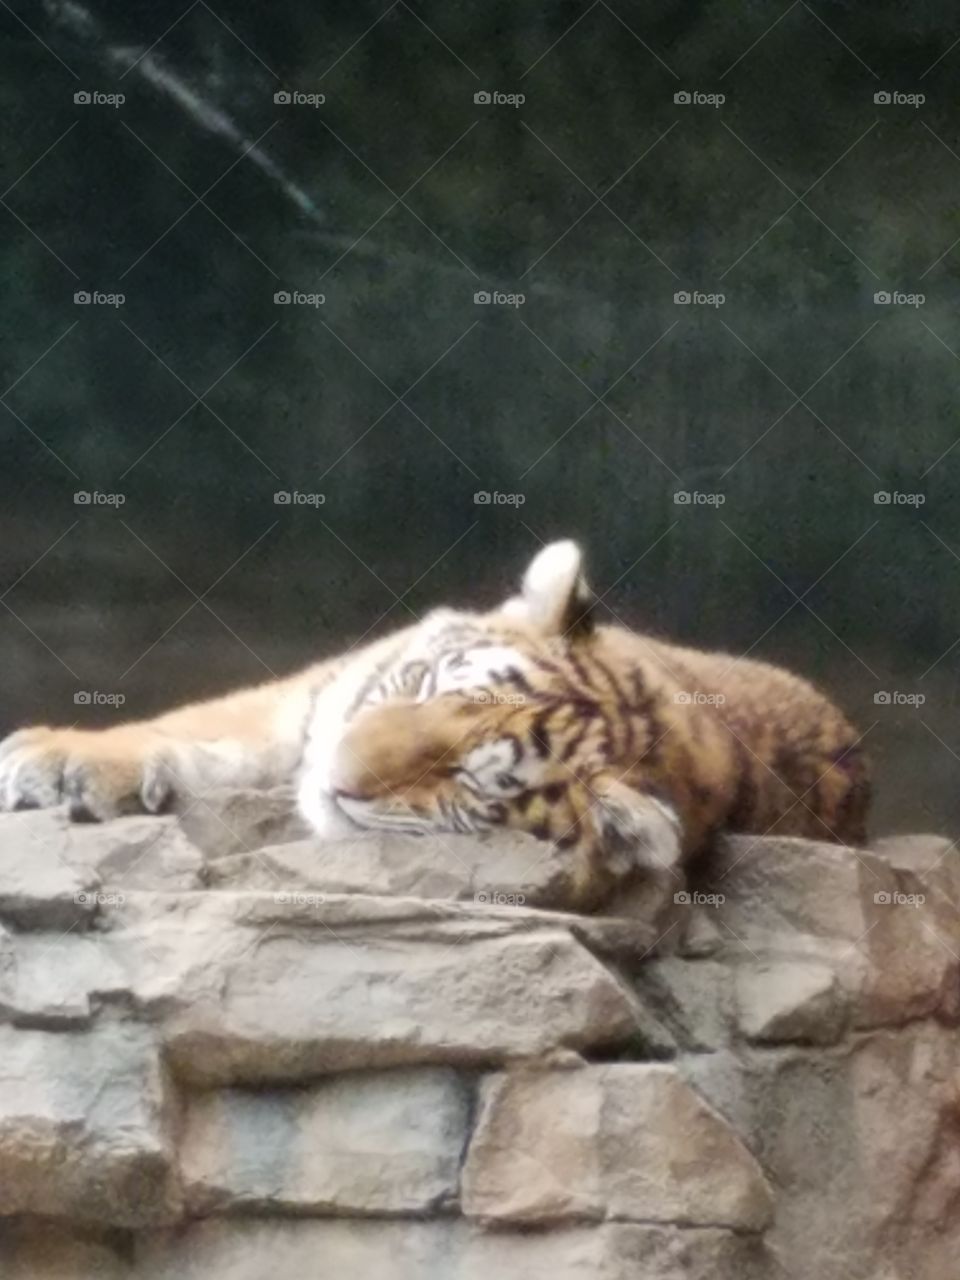 lazy zoo days